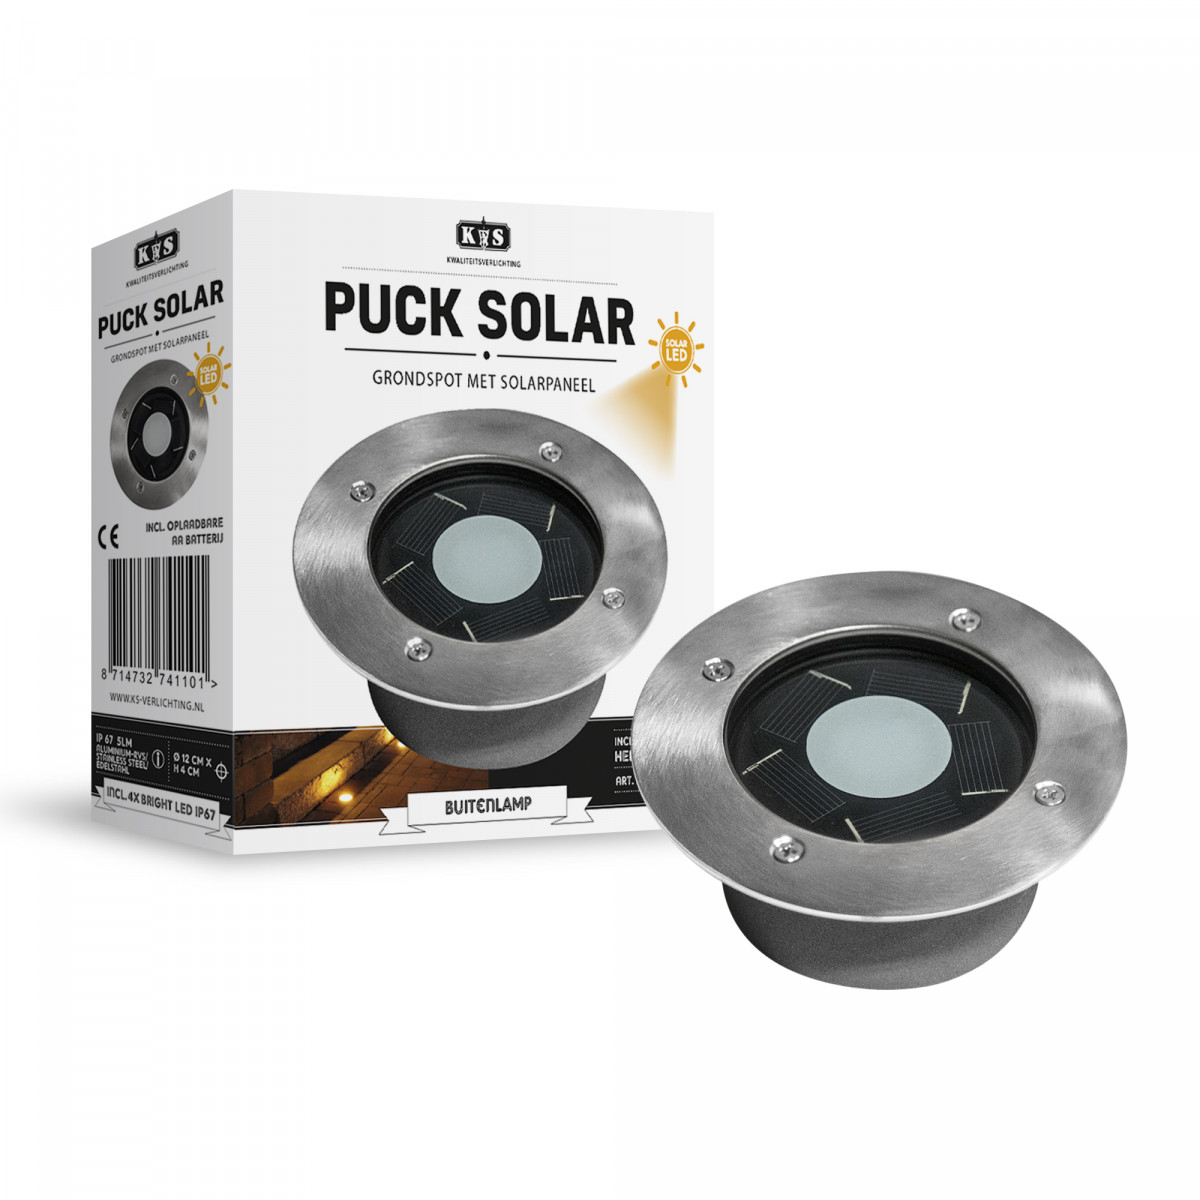 Puck solar (7411) (spot au sol solaire) 